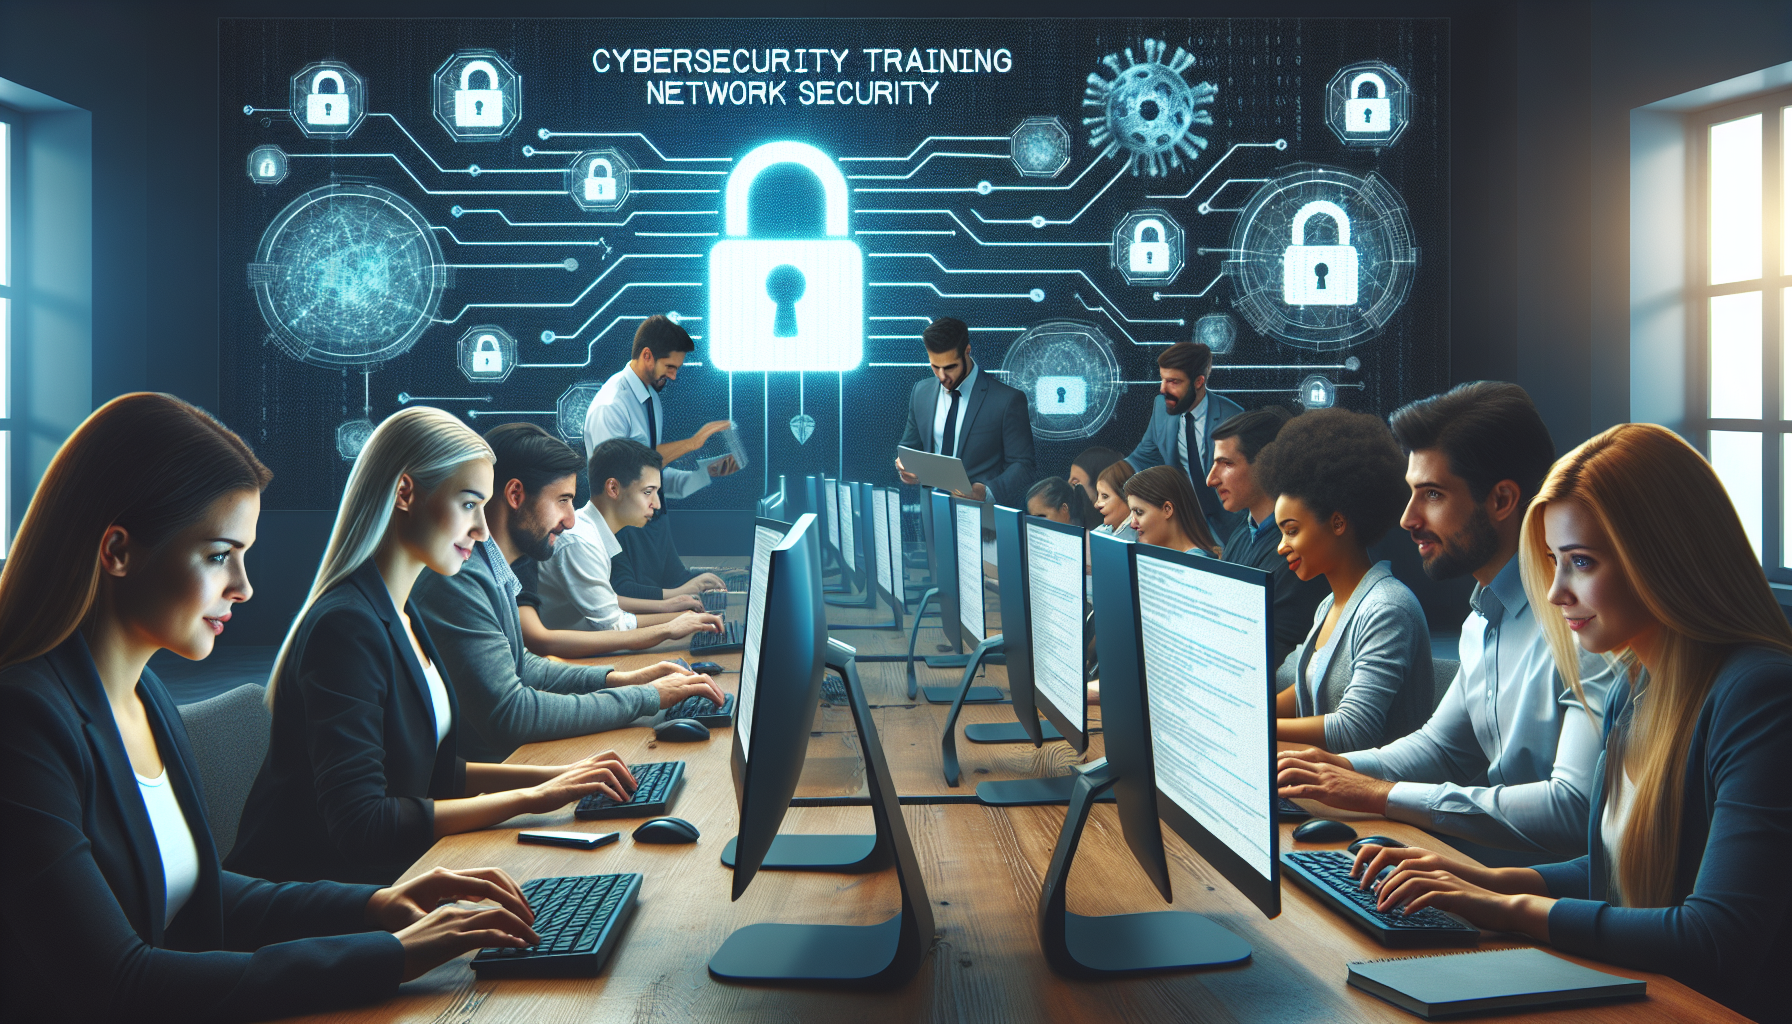 découvrez nos formations en cybersécurité pour maîtriser la sécurité des réseaux informatiques. devenez un expert de la sécurité des réseaux avec nos formations spécialisées.